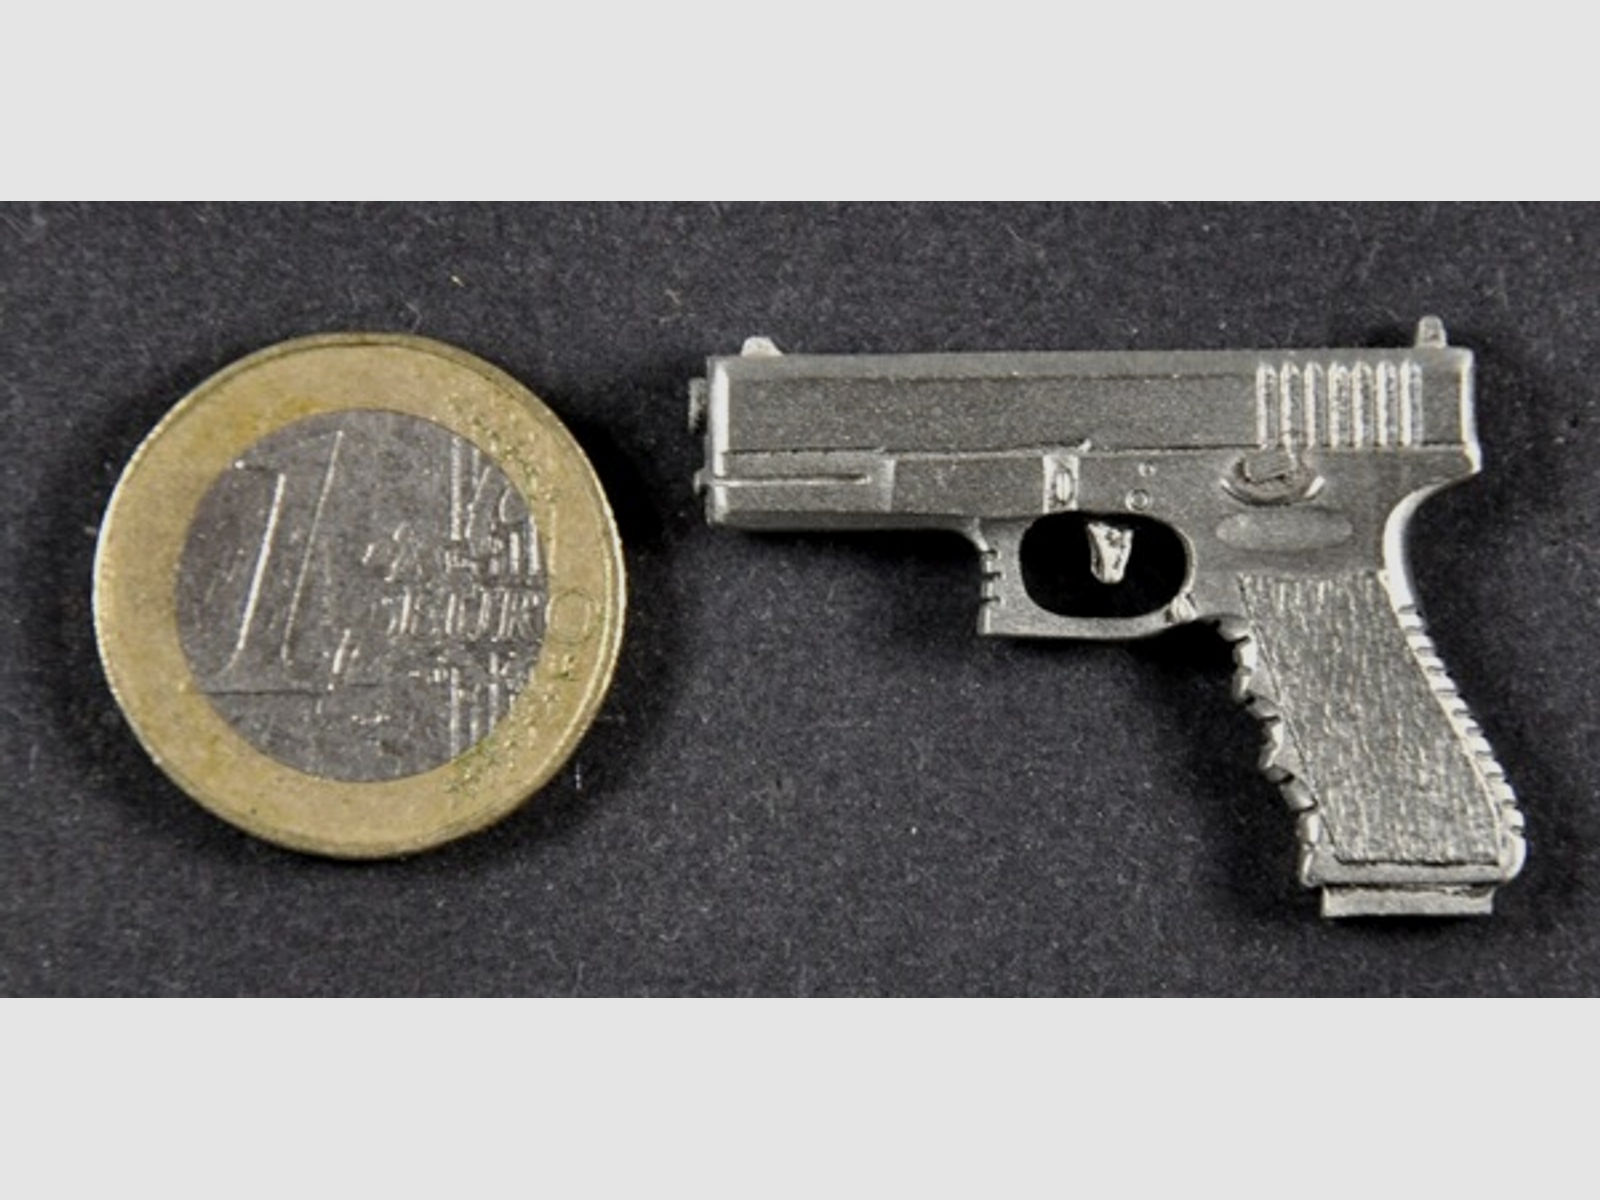 Glock Pistole neues Griffstück als Metall-Anstecker